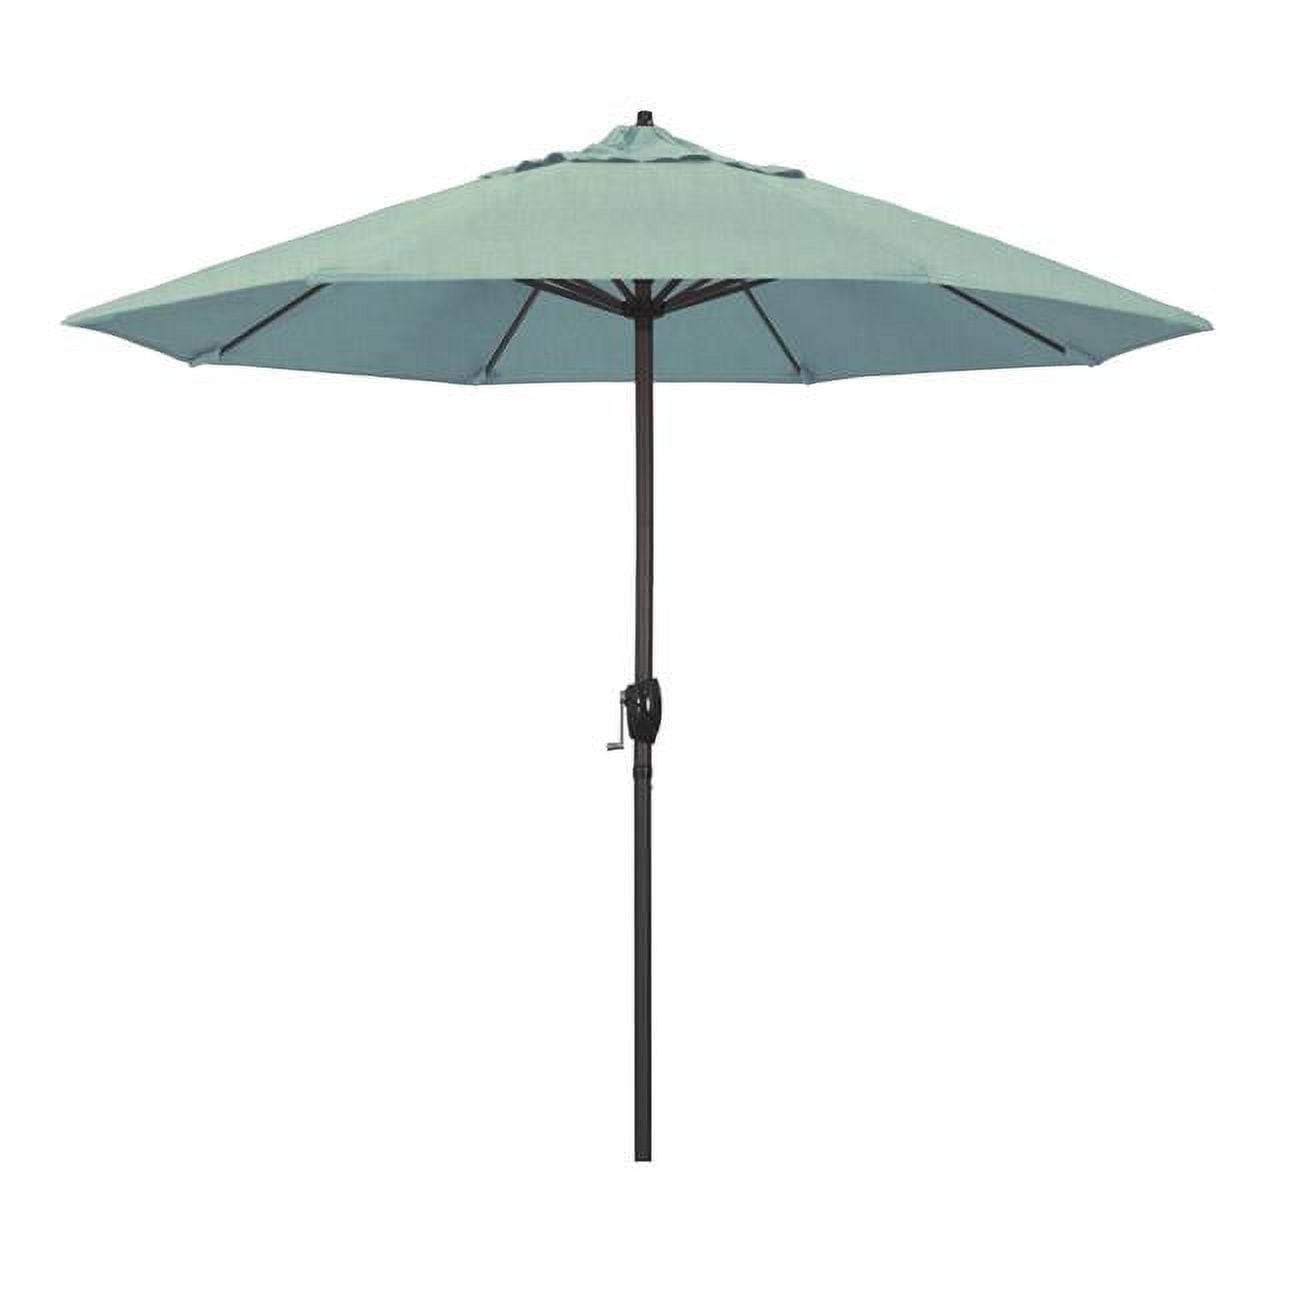 Ata908117-5413 9 Ft. Casa Series Patio Bronze Auto Tilt Crank Lift - Sunbrella 1a Spa Fabric